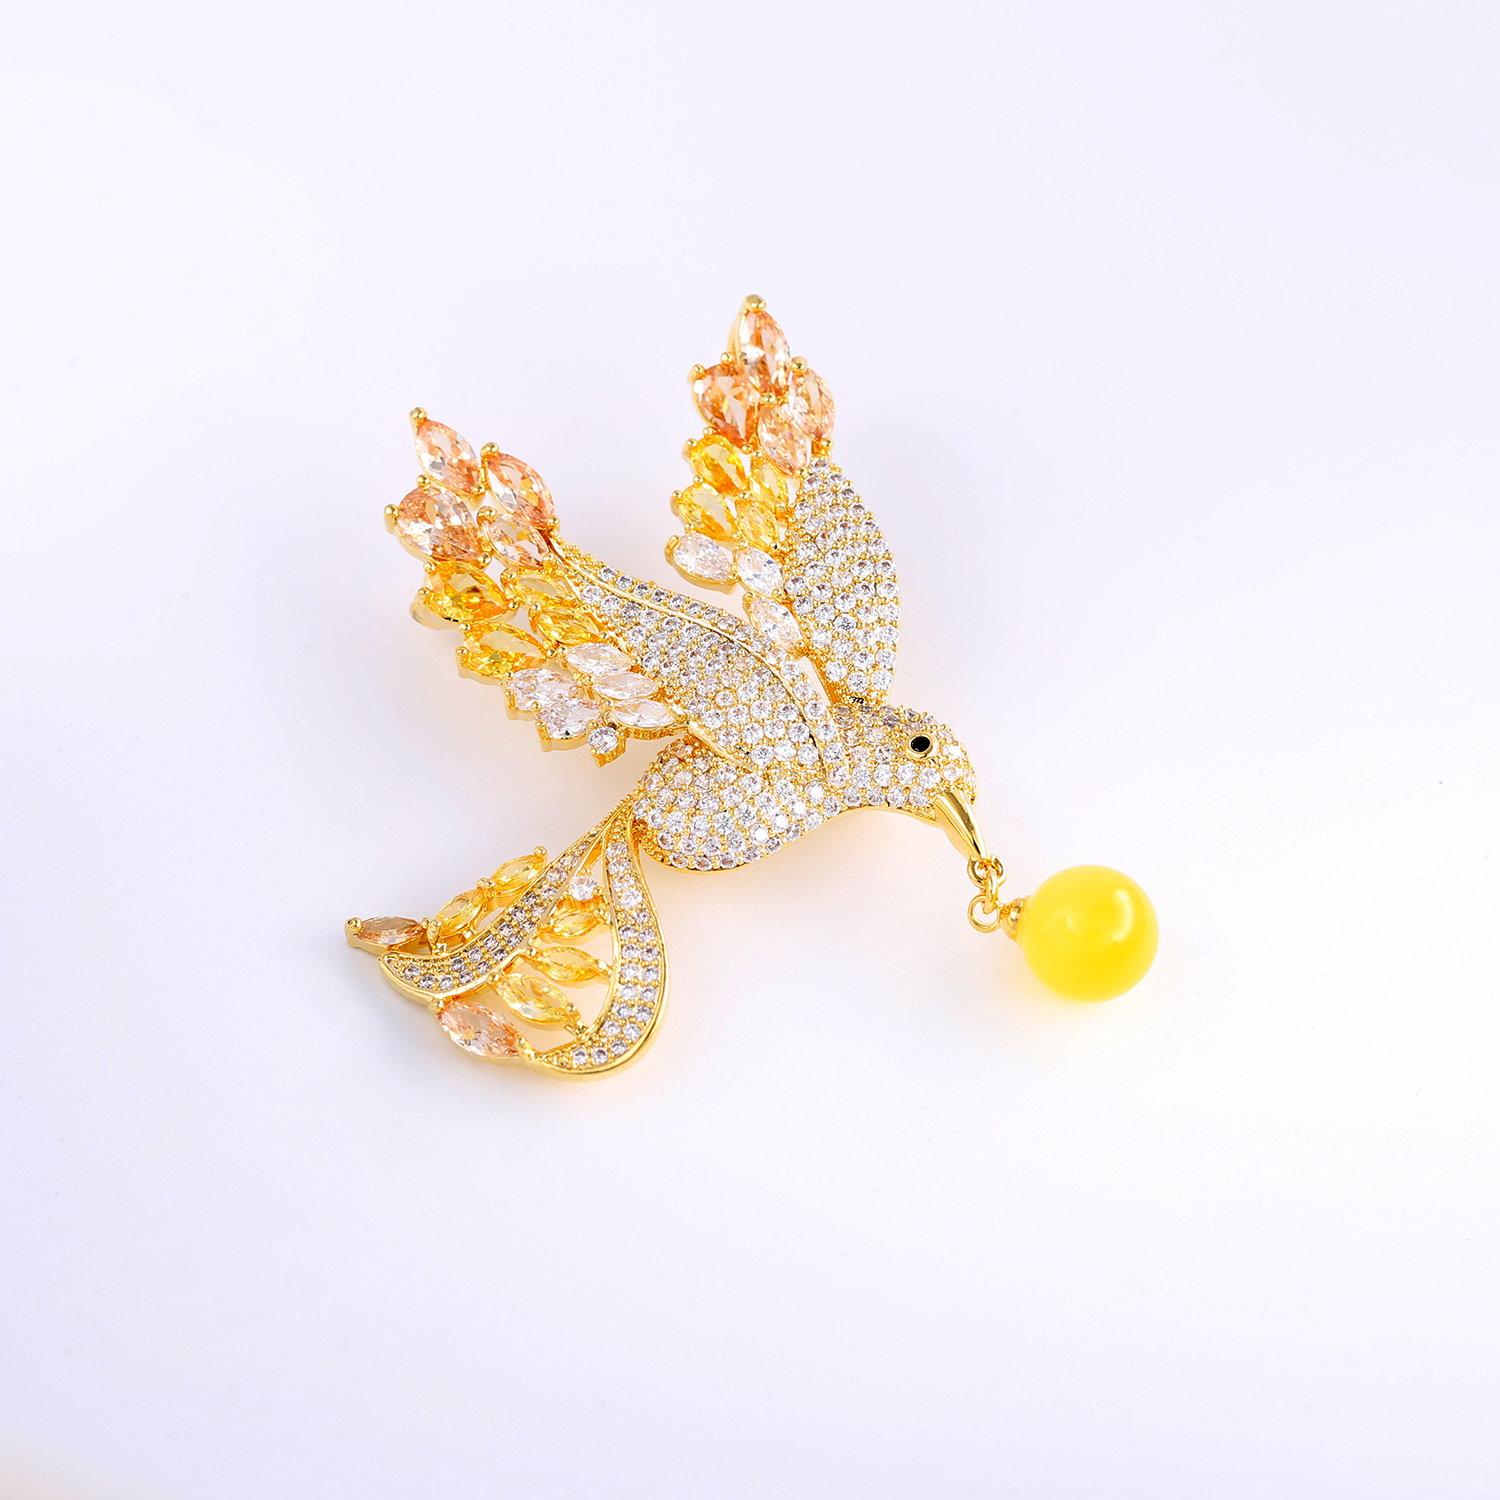 Minyak ayam asli baru kuning kerongsang burung kolibri lilin lebah Rusia bermutu tinggi korsaj mutiara lilin lebah betina reka bentuk ceruk daun aprikot